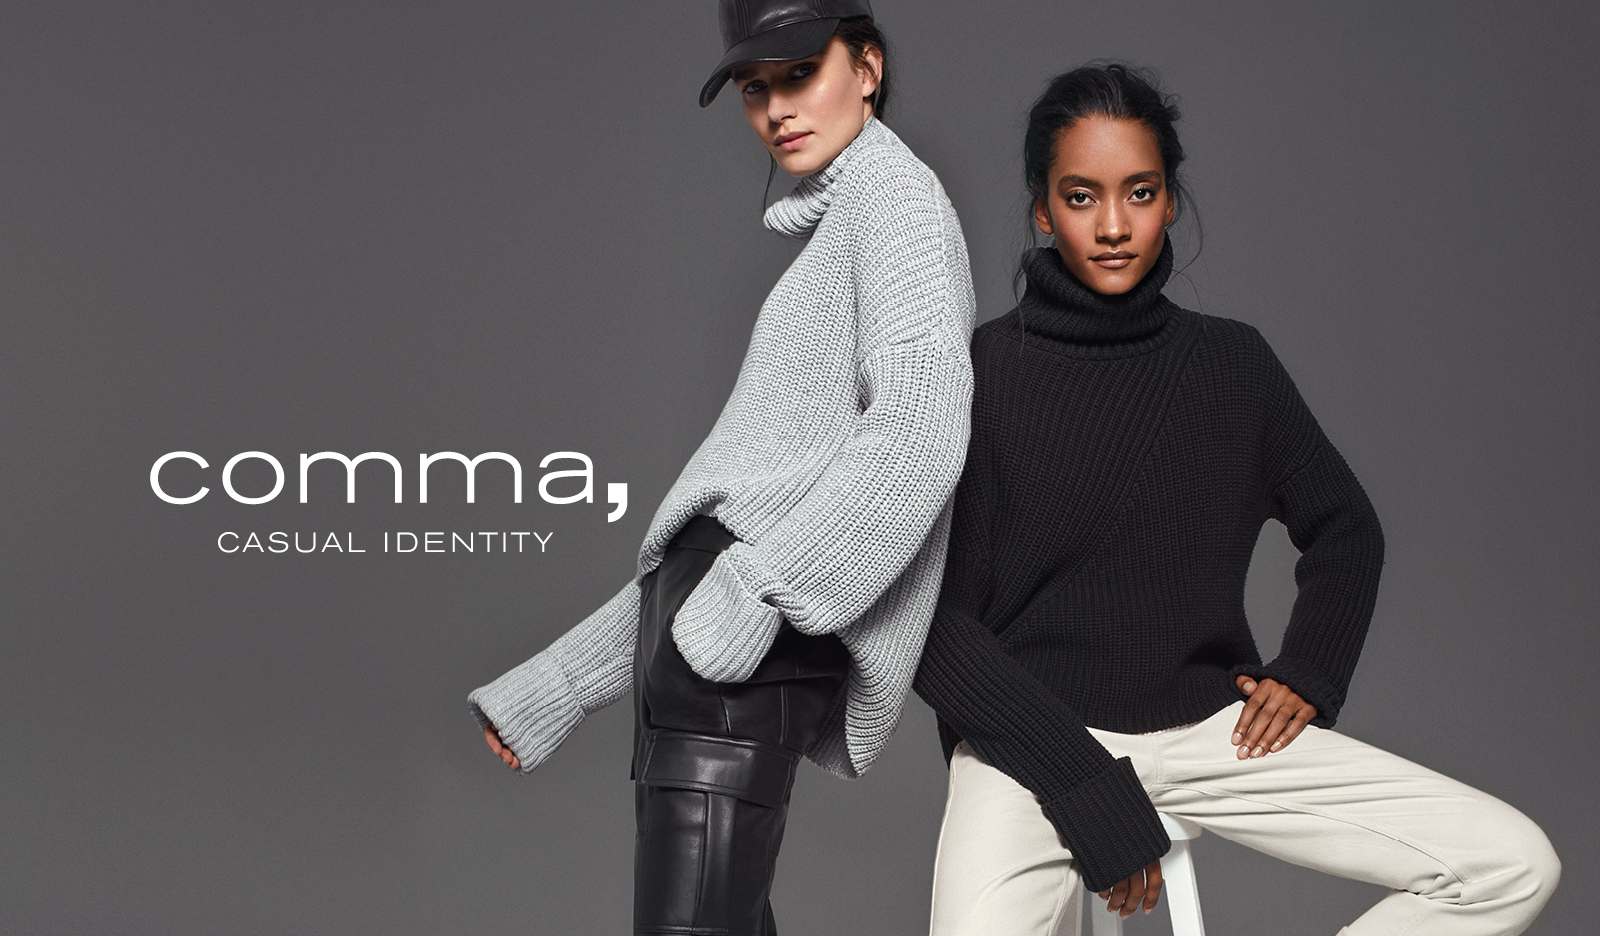 Maak kennis met een nieuwe merk in onze collectie dames kleding: Comma casual identity. En met een ruim assortiment aan dames jeans, shirts, blouses, blazers en jurken kun je een grote dames kleding collectie van Comma online bestellen.